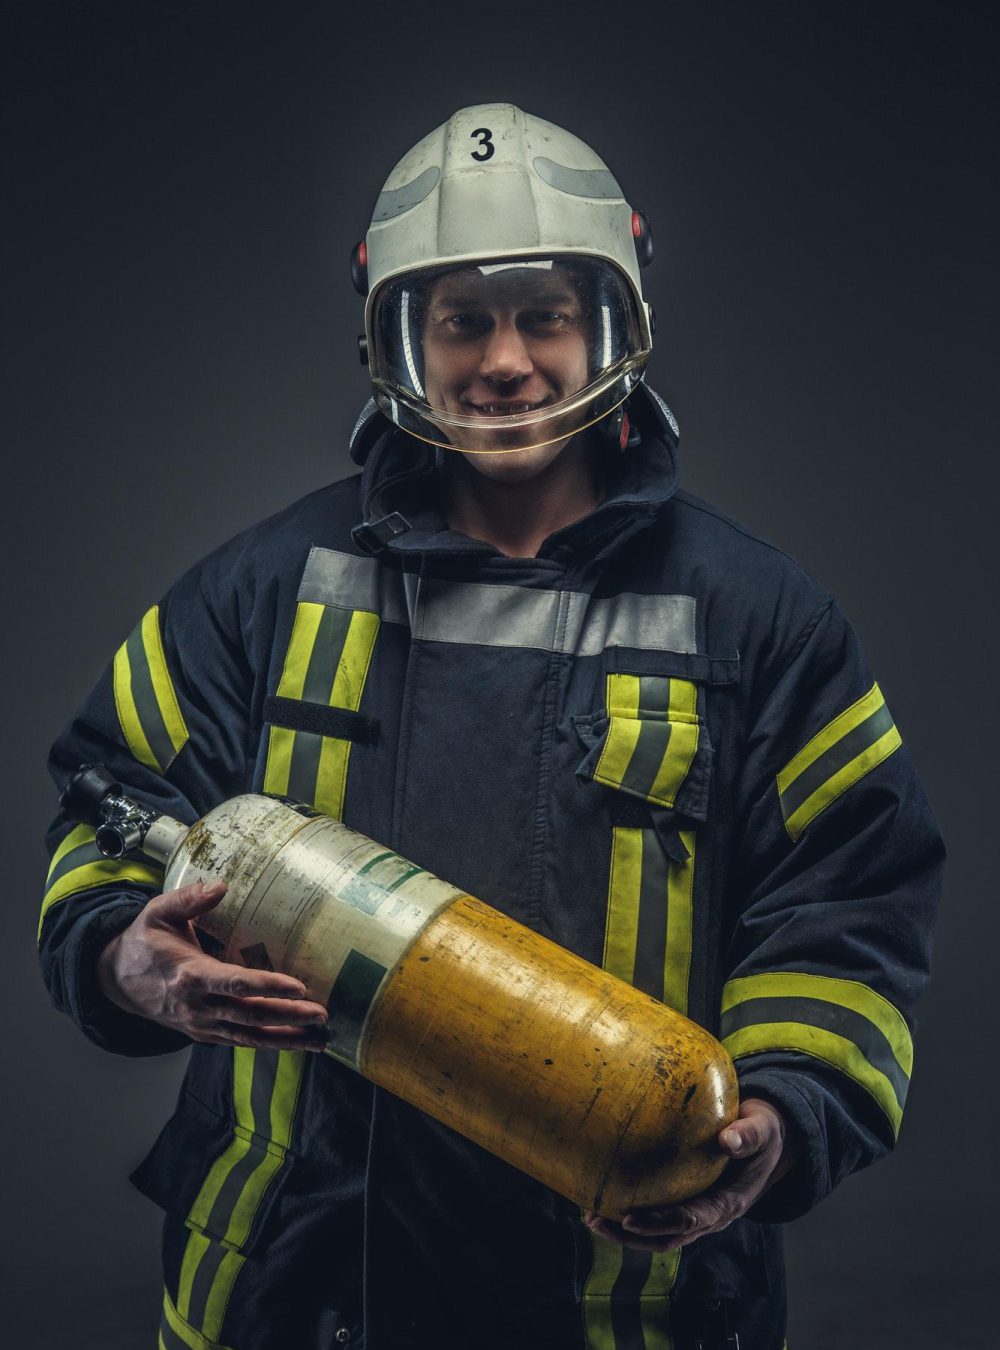 Feuerwehrmann mit Helm hält Sauerstoffflasche in der Hand